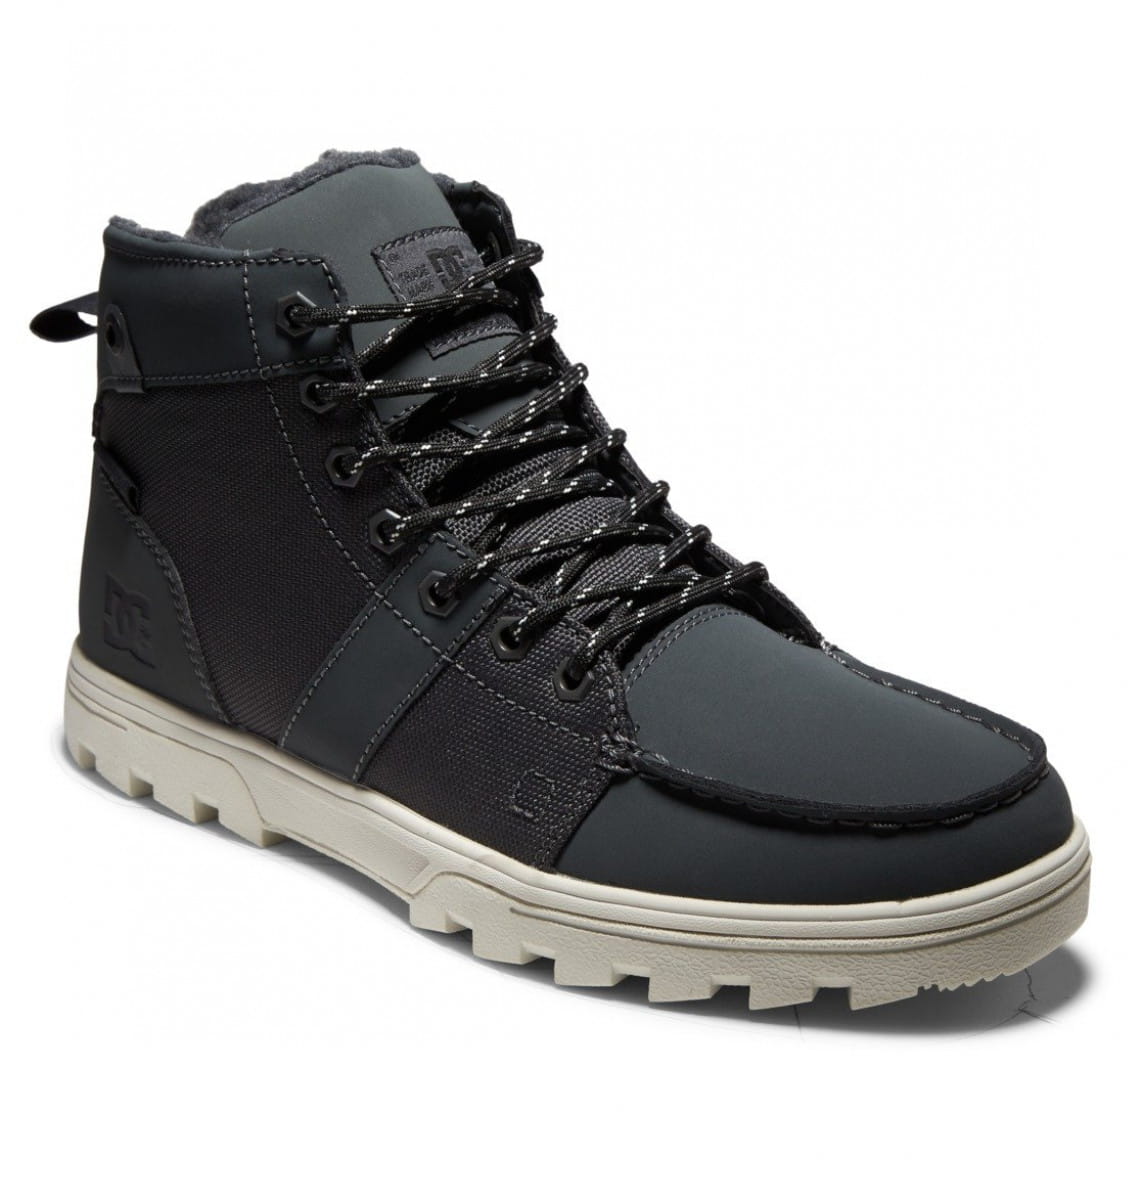 Купить мужские ботинки DC SHOES Woodland черный от DC Shoes по выгоднойцене за 10290 Р